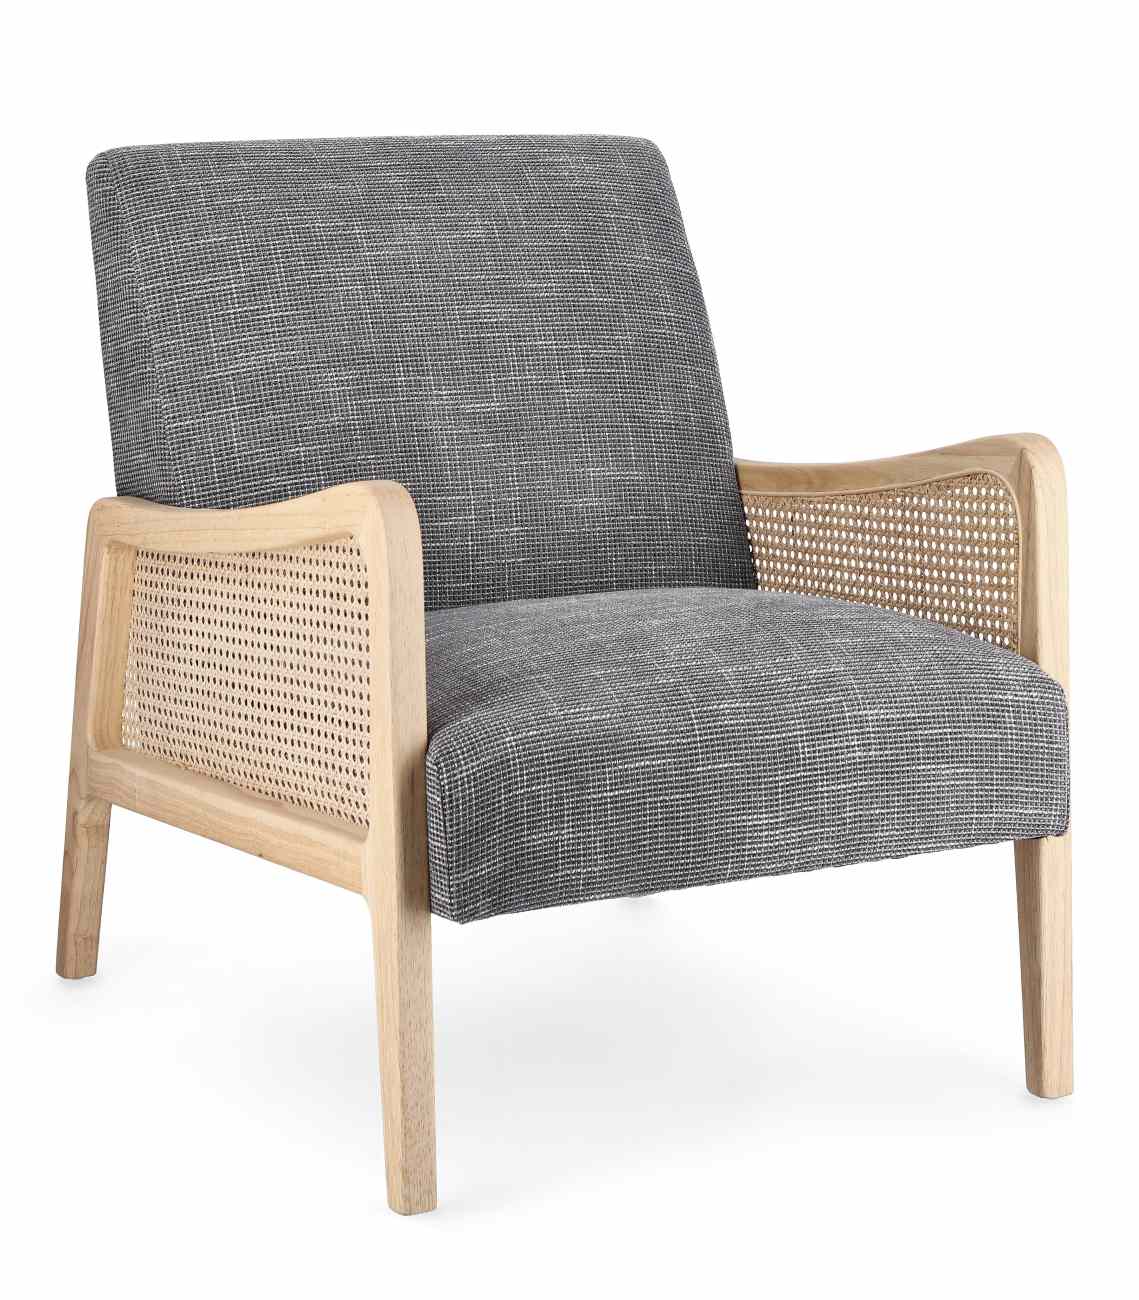 Der Sessel Deanna überzeugt mit seinem modernen Stil. Gefertigt wurde er aus einem Stoff-Bezug, welcher einen grauen Farbton besitzt. Das Gestell ist aus Kautschukholz und hat eine natürliche Farbe. Der Sessel verfügt über eine Armlehne.